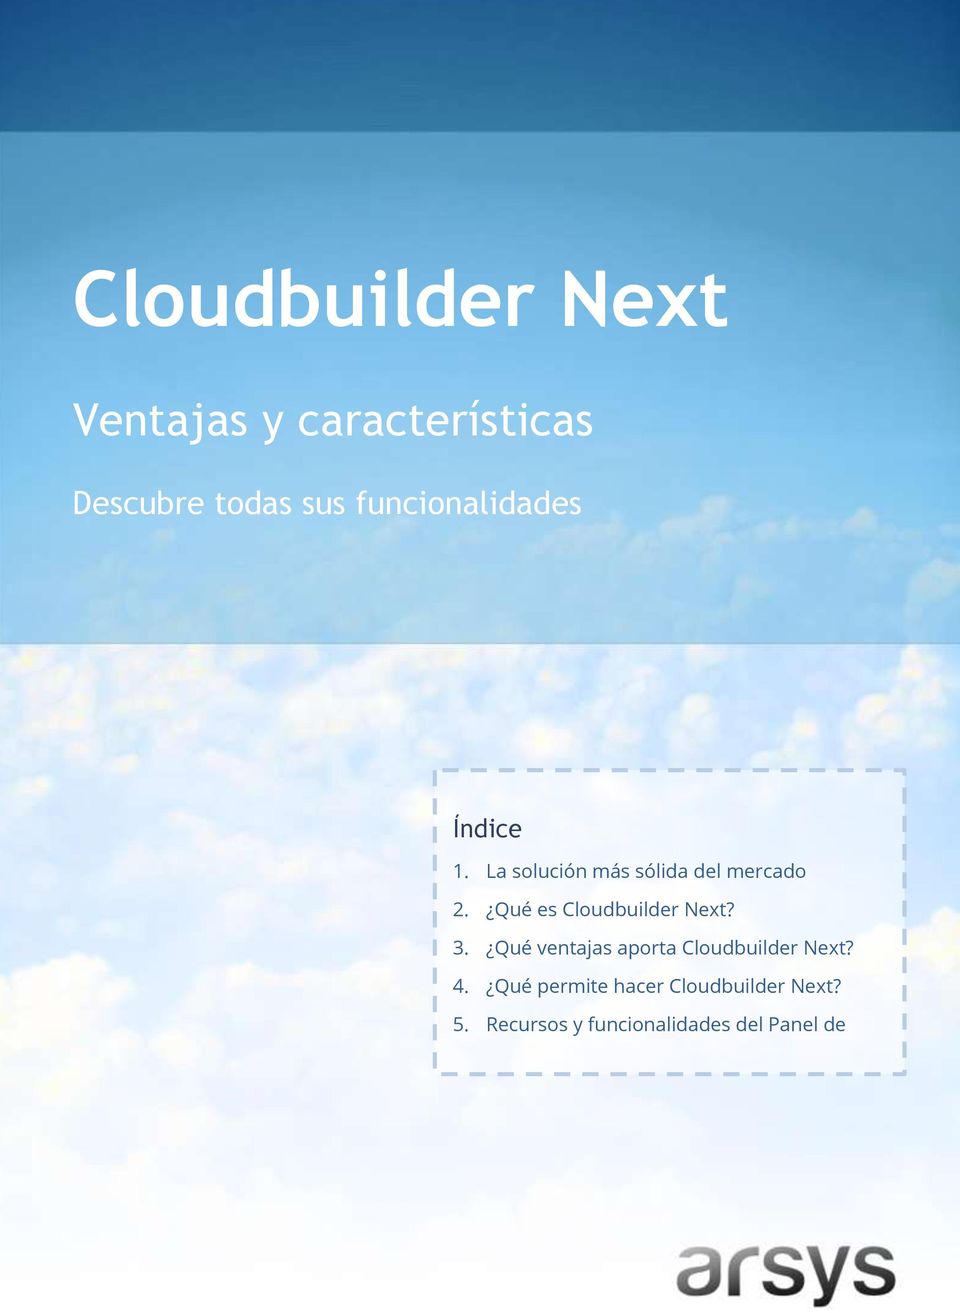 Qué es Cloudbuilder Next? 3. Qué ventajas aporta Cloudbuilder Next? 4.